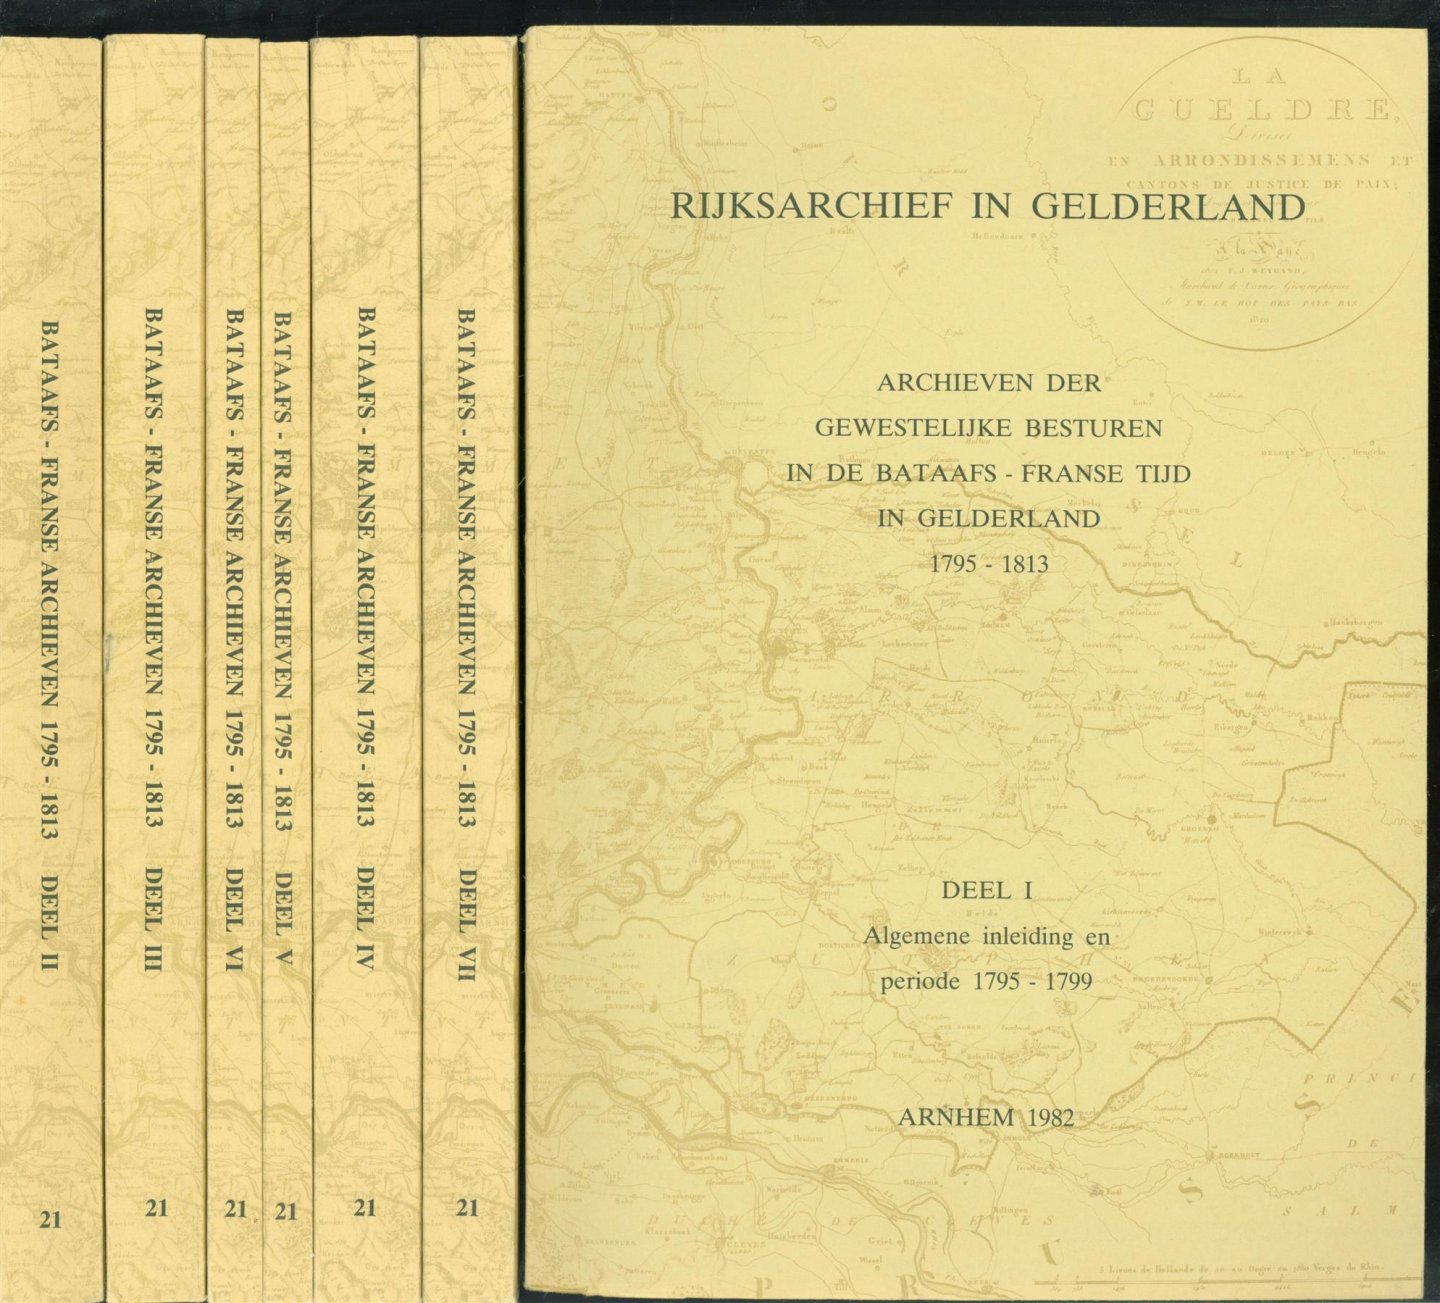 J Hofman, Rijksarchief in Gelderland (Arnhem) - Inventaris van de archieven der gewestelijke besturen in de Bataafs-Franse tijd in Gelderland 1795-1813